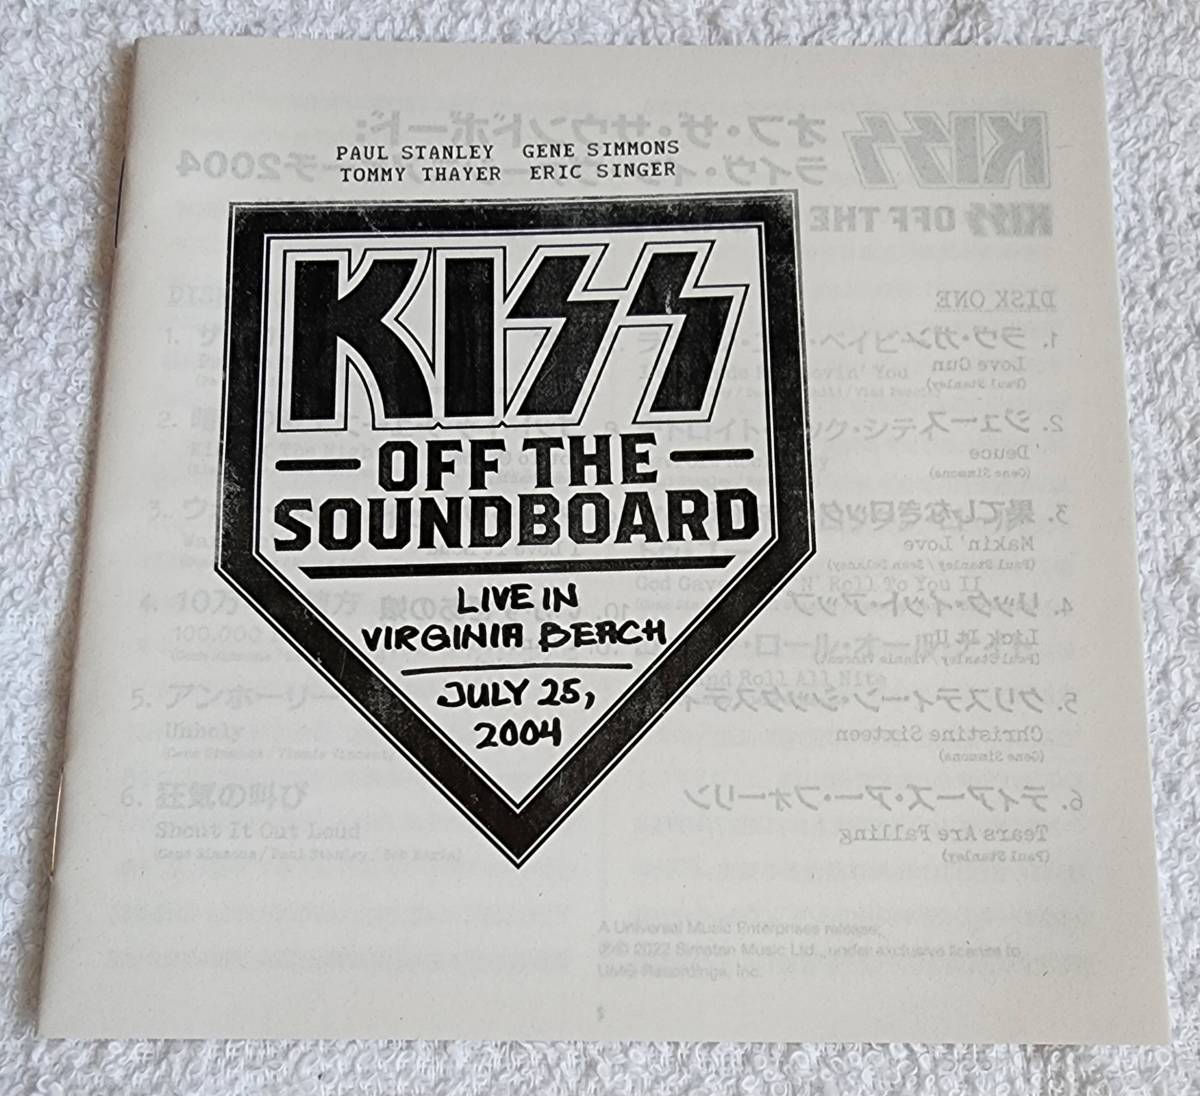 KISS / OFF THE SOUNDBOARD off * The * звук панель жить * in * Virginia пляж 2004 [ ограничение запись ] [ бумага jacket ][SHM-CD]